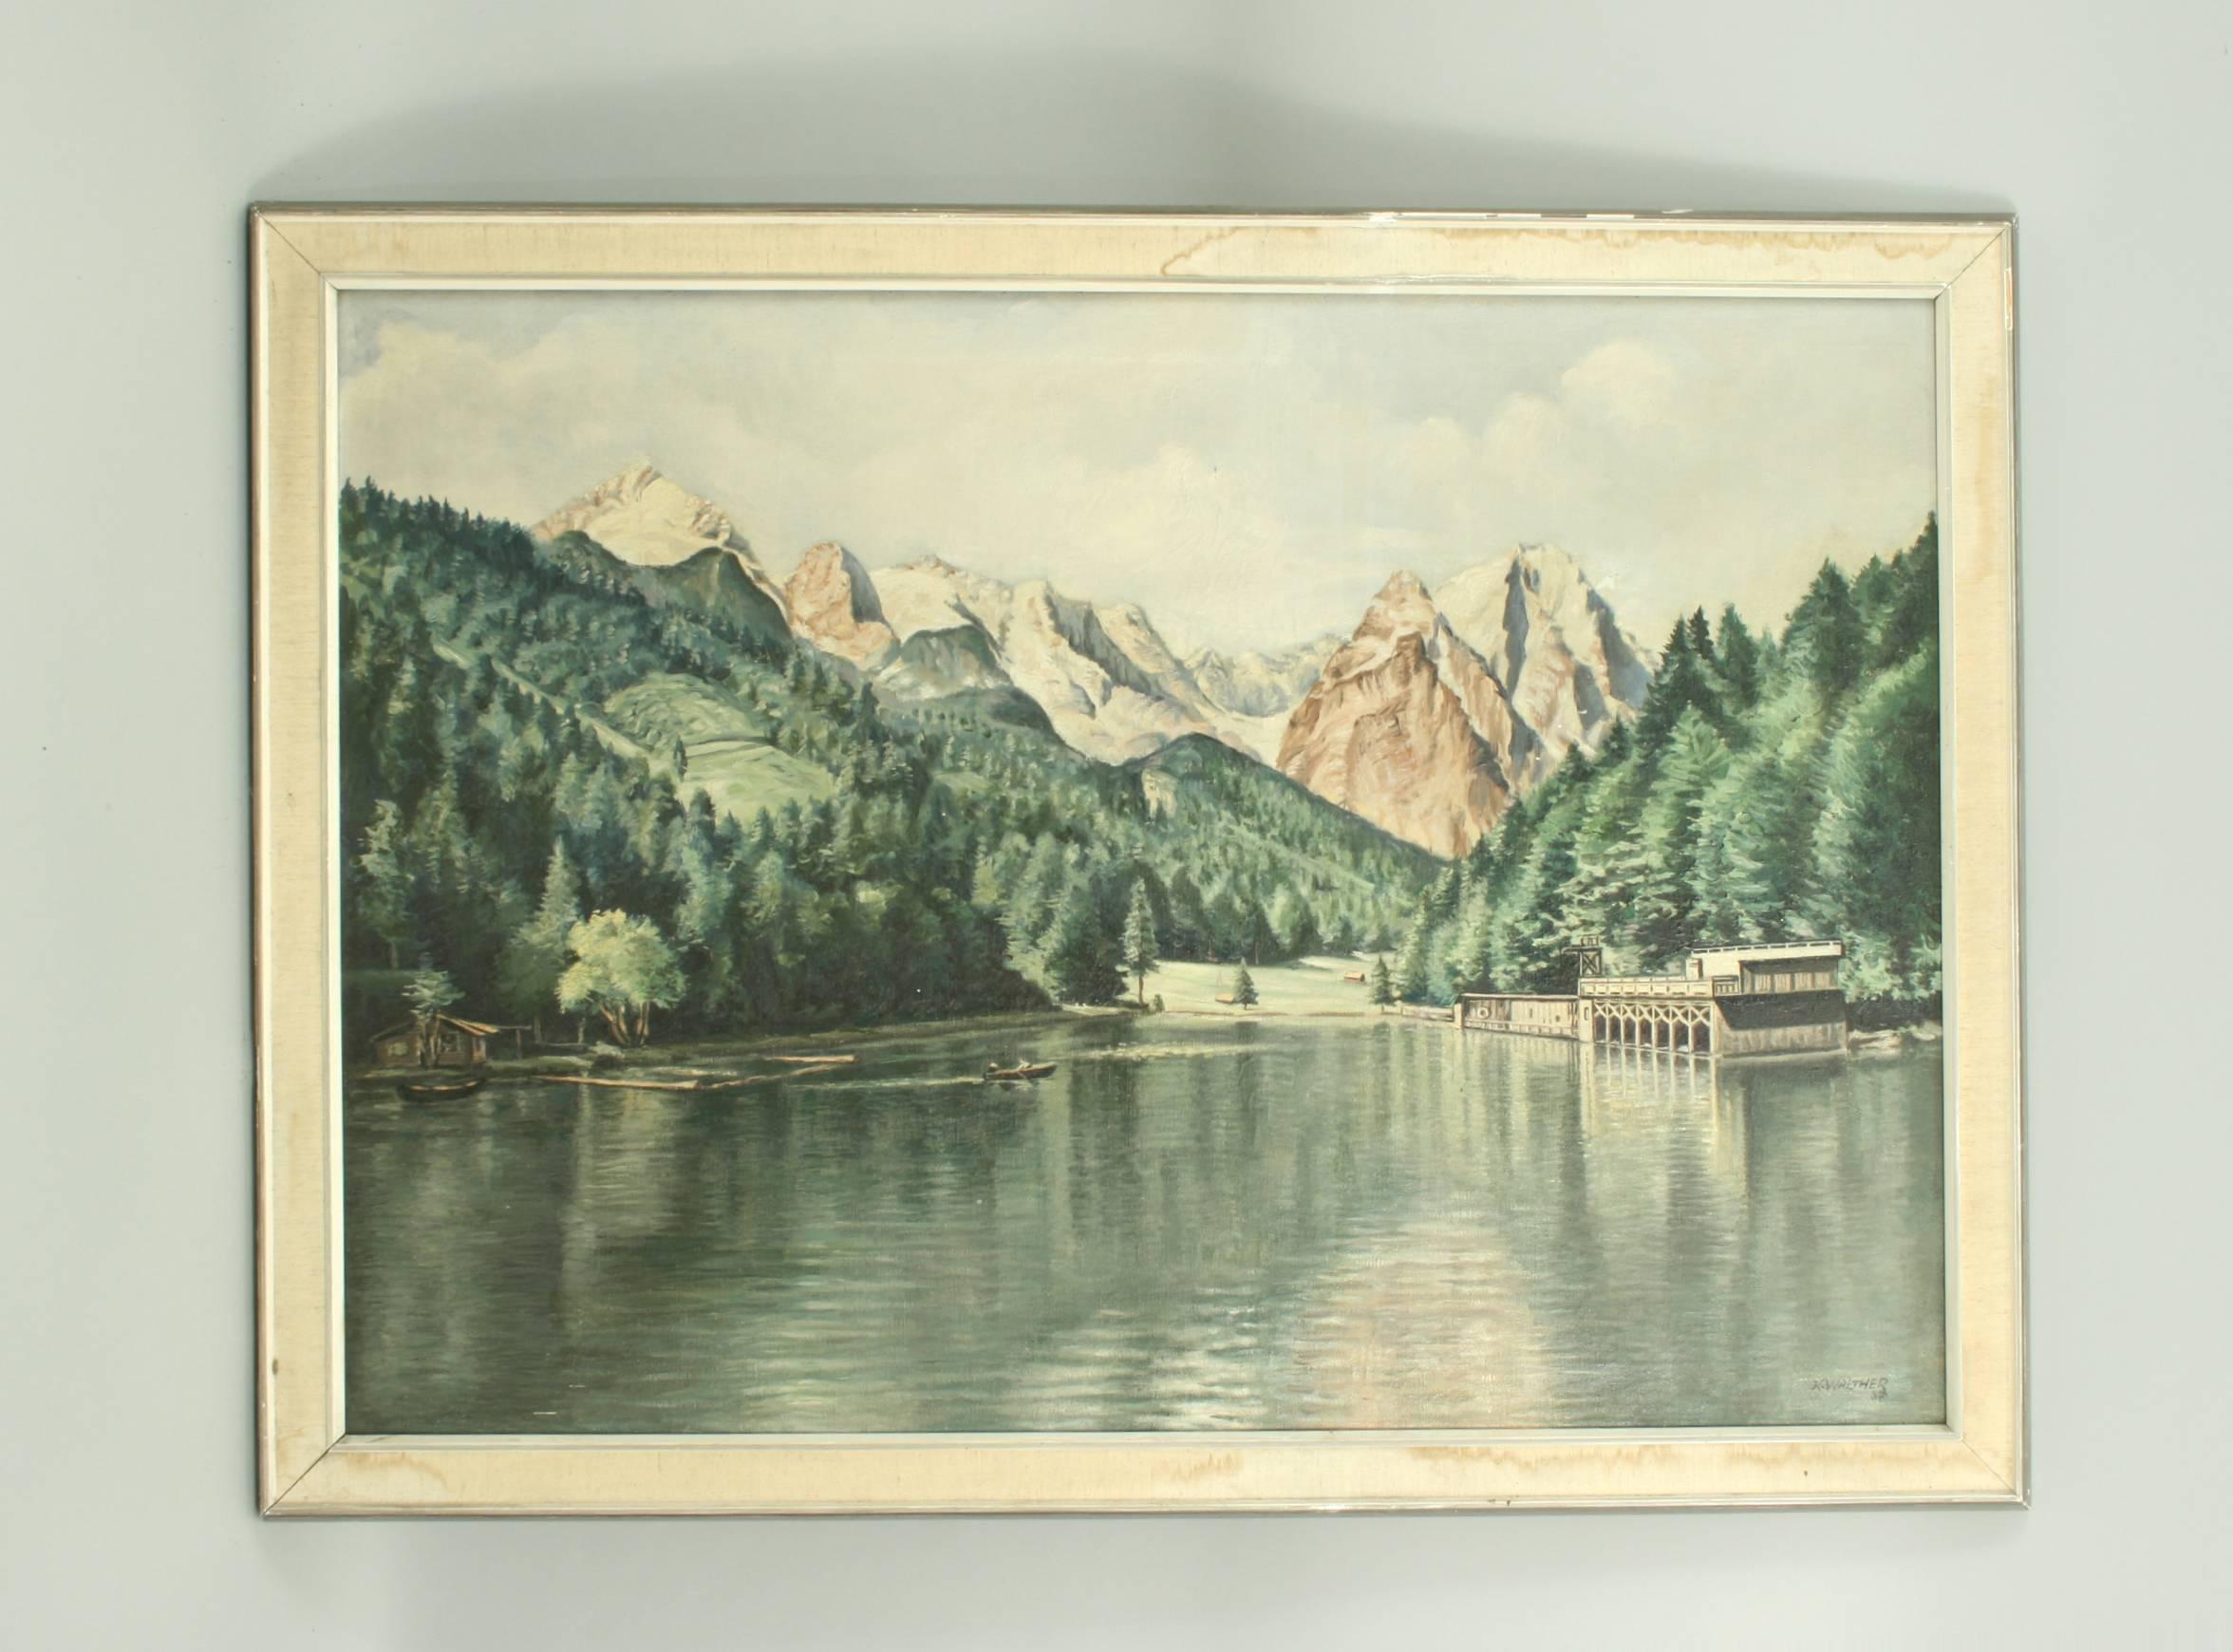 Peinture à l'huile de Rissersee, Allemagne.
Une peinture à l'huile très pittoresque du Rissersee, un lac situé à Grainau près de Garmisch - Partenkirchen, entouré par les Alpes bavaroises. Peint par l'artiste allemand Karl Walther (1880-1954). Il